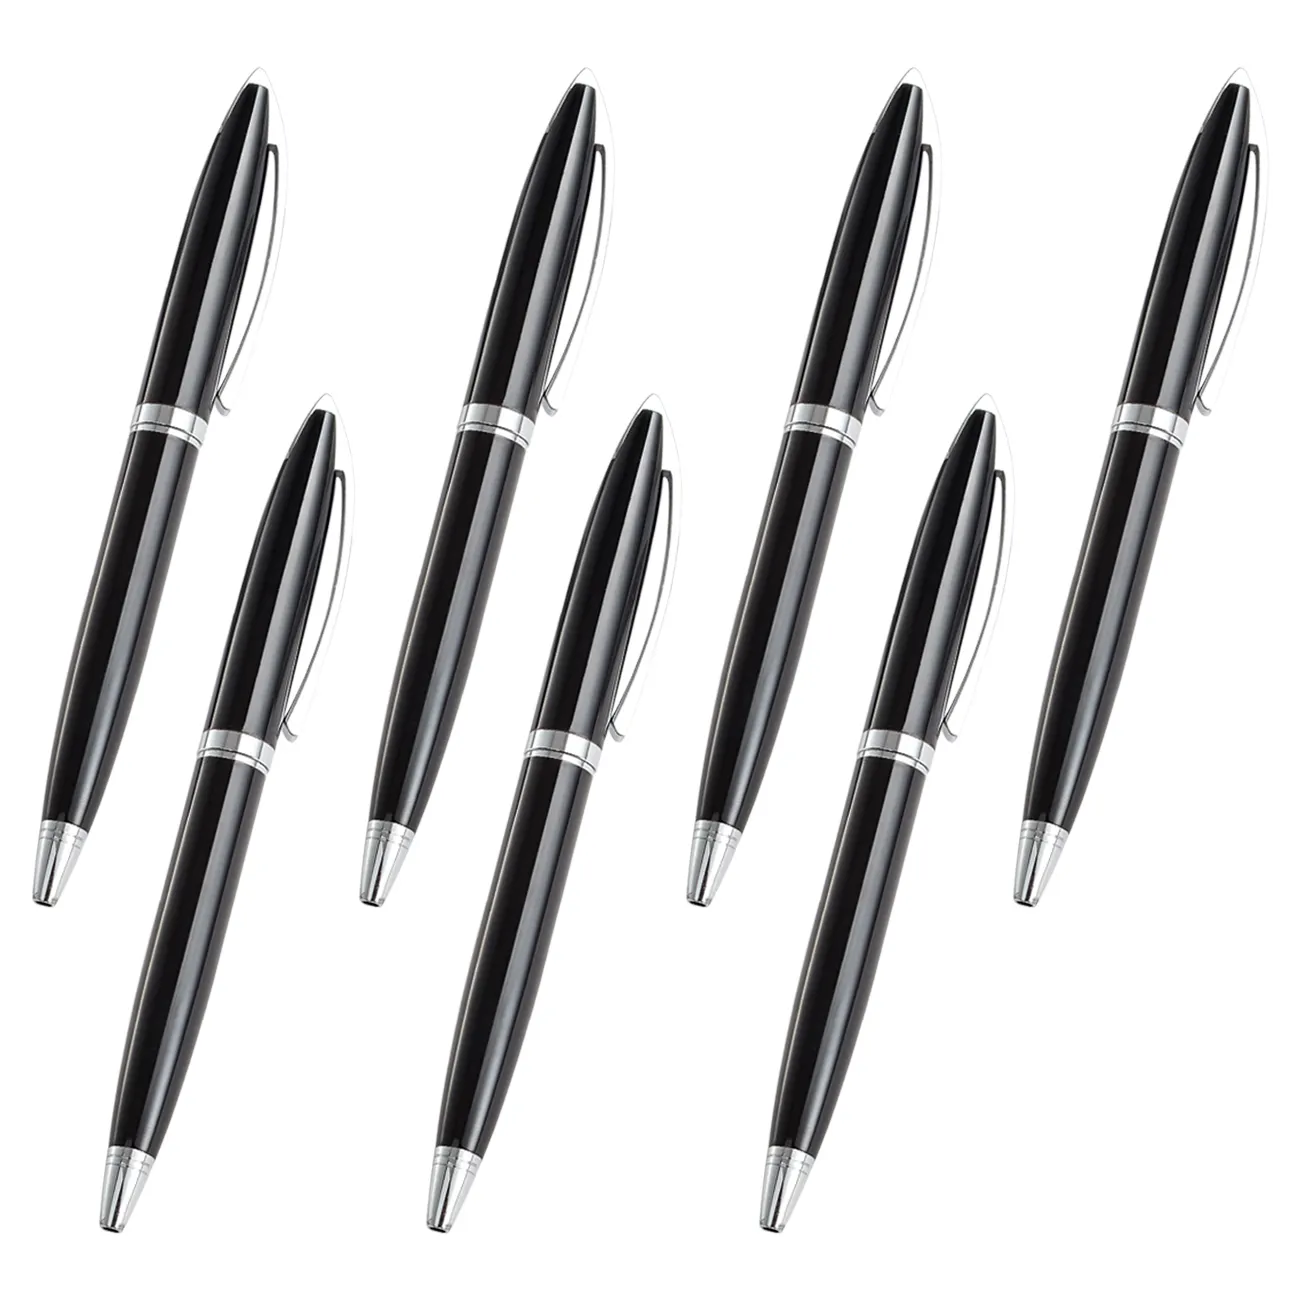 Mükemmel hediyeler kaliteli metal tükenmez kalem lüks siyah gümüş kalem